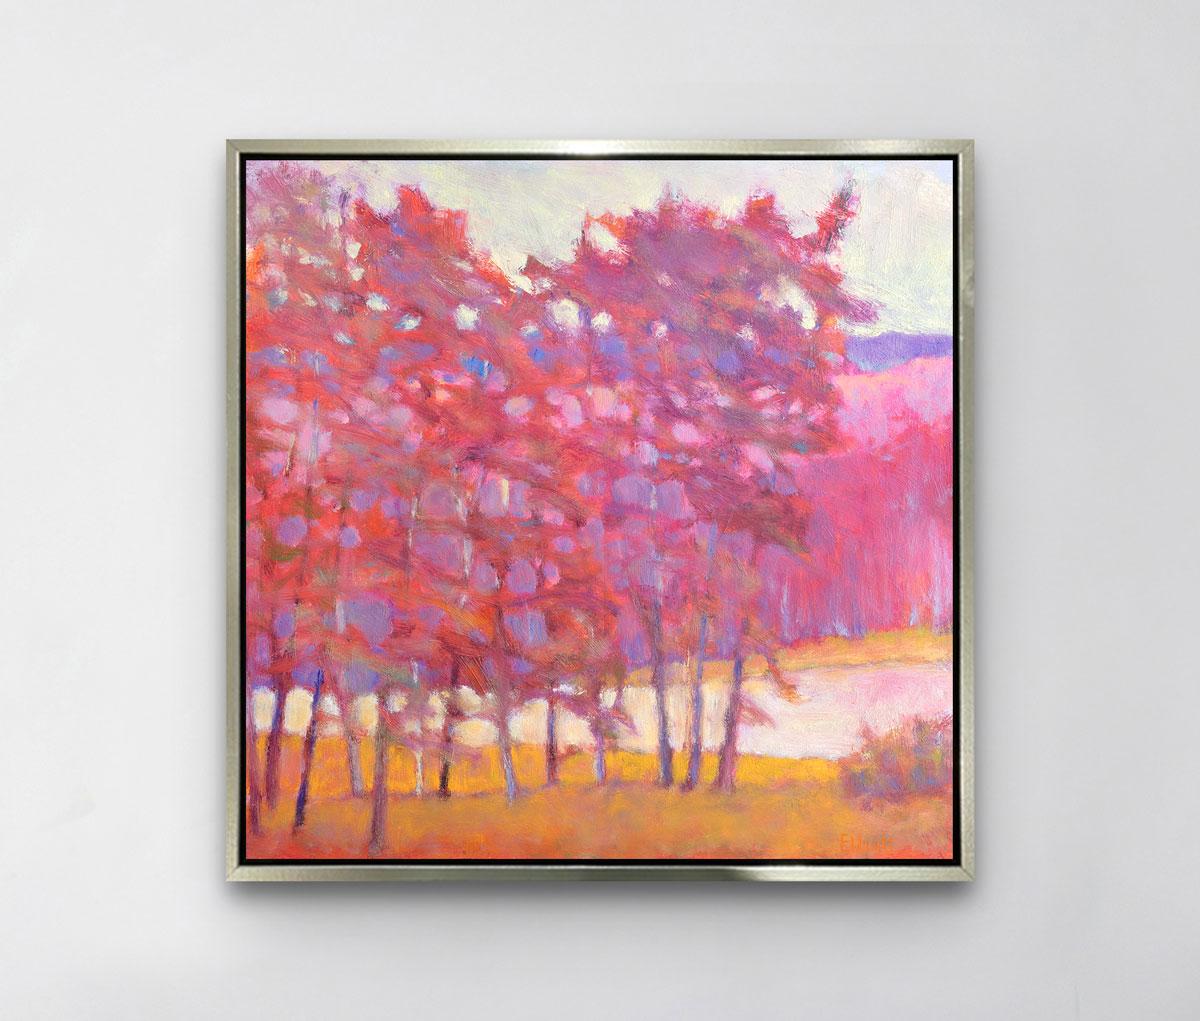 Dieses farbenfrohe, abstrakte Landschaftsbild ist ein limitierter Giclee-Druck von Ken Elliott mit einer Auflage von 195 Stück. Dieses auf Leinwand gedruckte Giclee wird in einem goldenen Schweberahmen gerahmt, verdrahtet und aufhängefertig